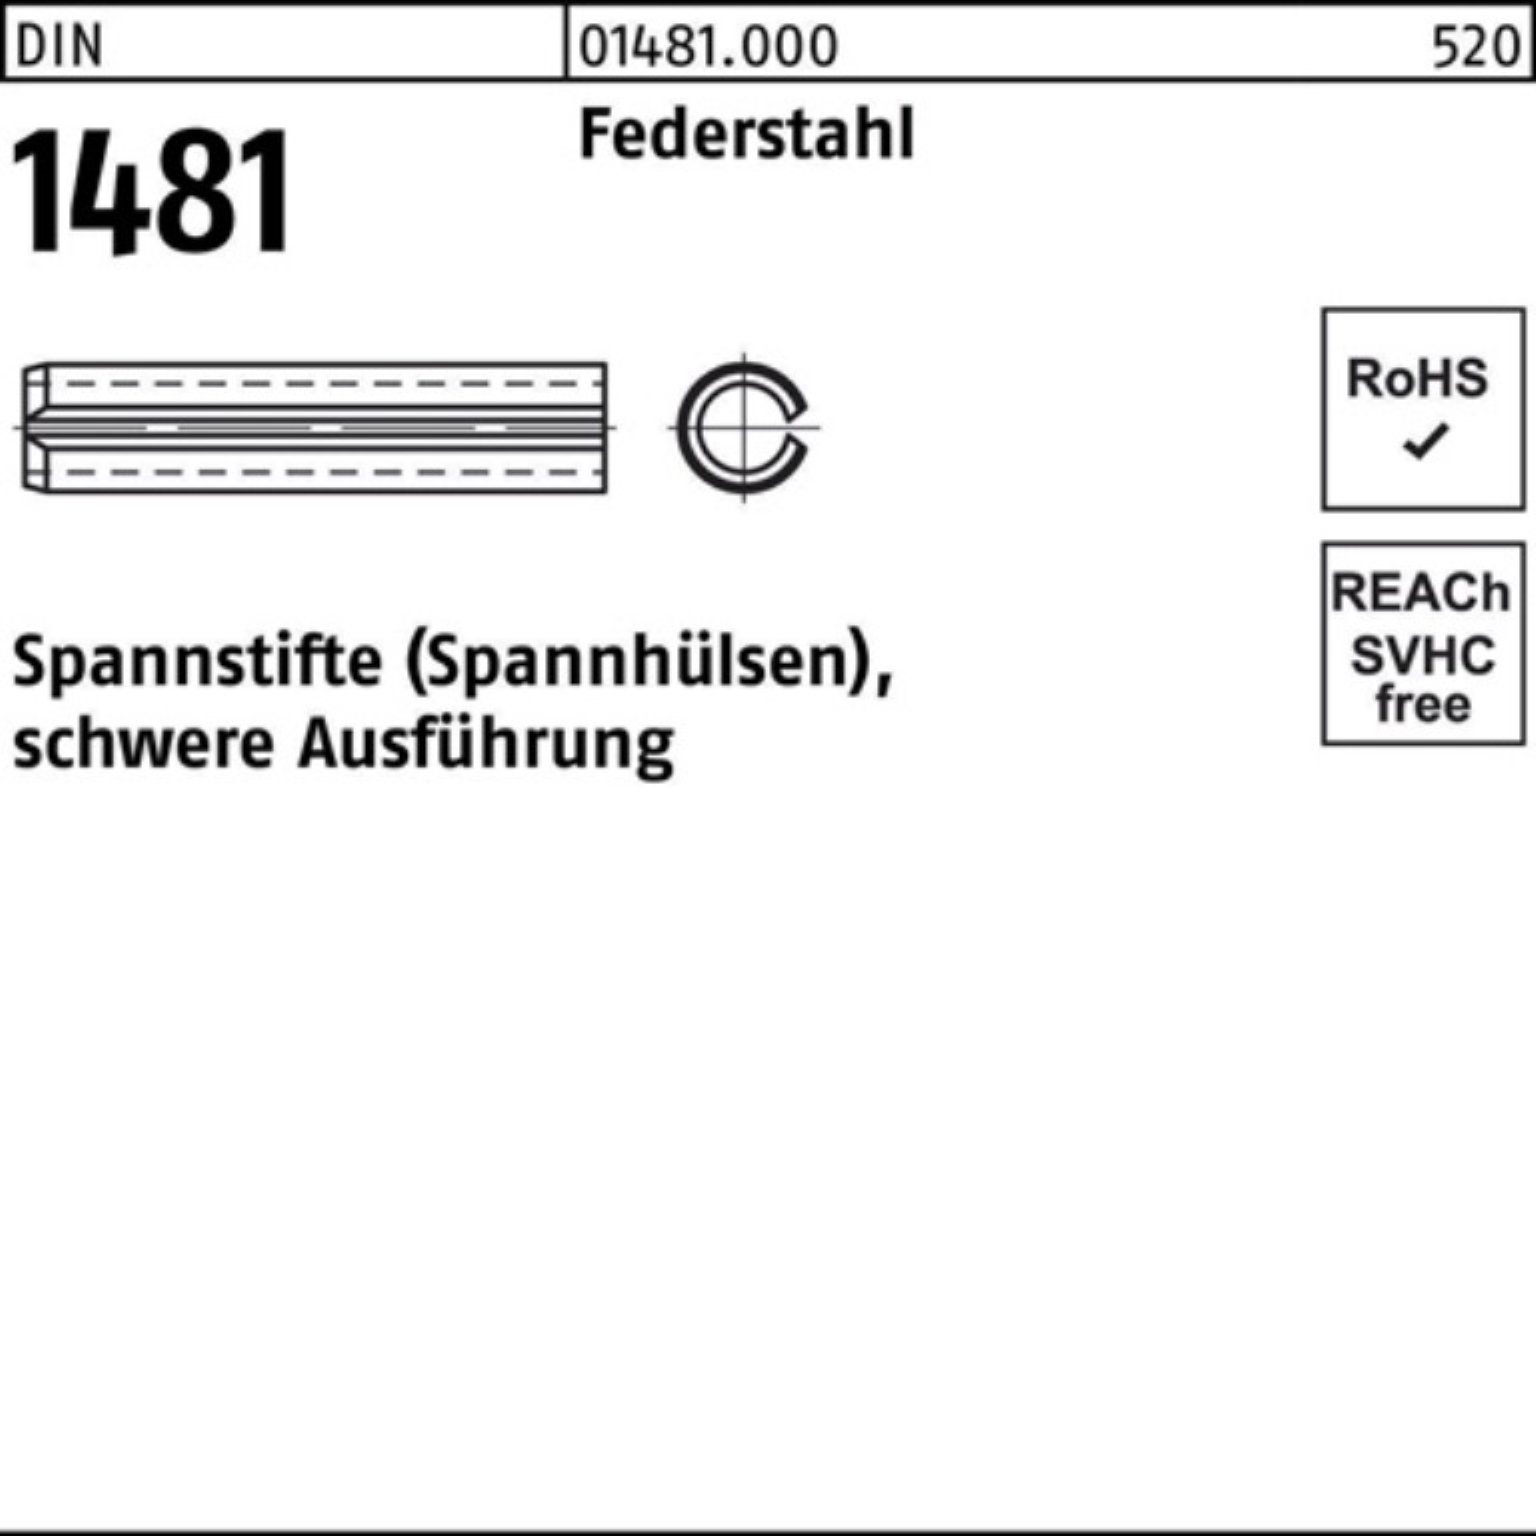 Ausführung Reyher Spannstift Federstahl schwere 5 1481 DIN Spannstift Pack 10x 28 500er